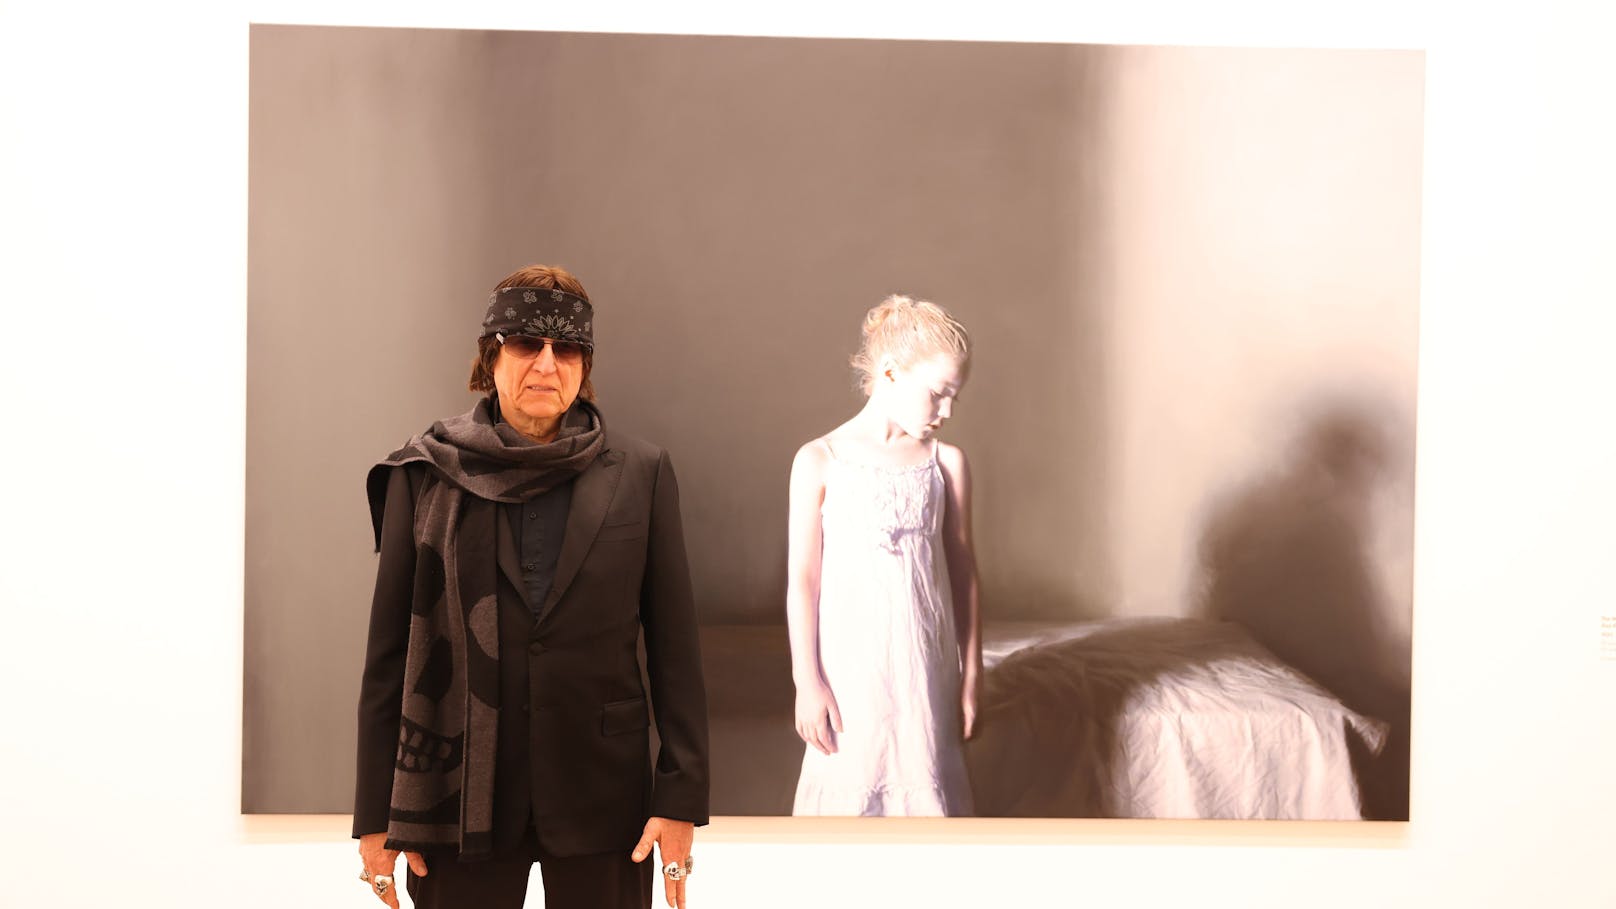 Helnwein-Ausstellung: "Wegschauen, wenns nicht gefällt"